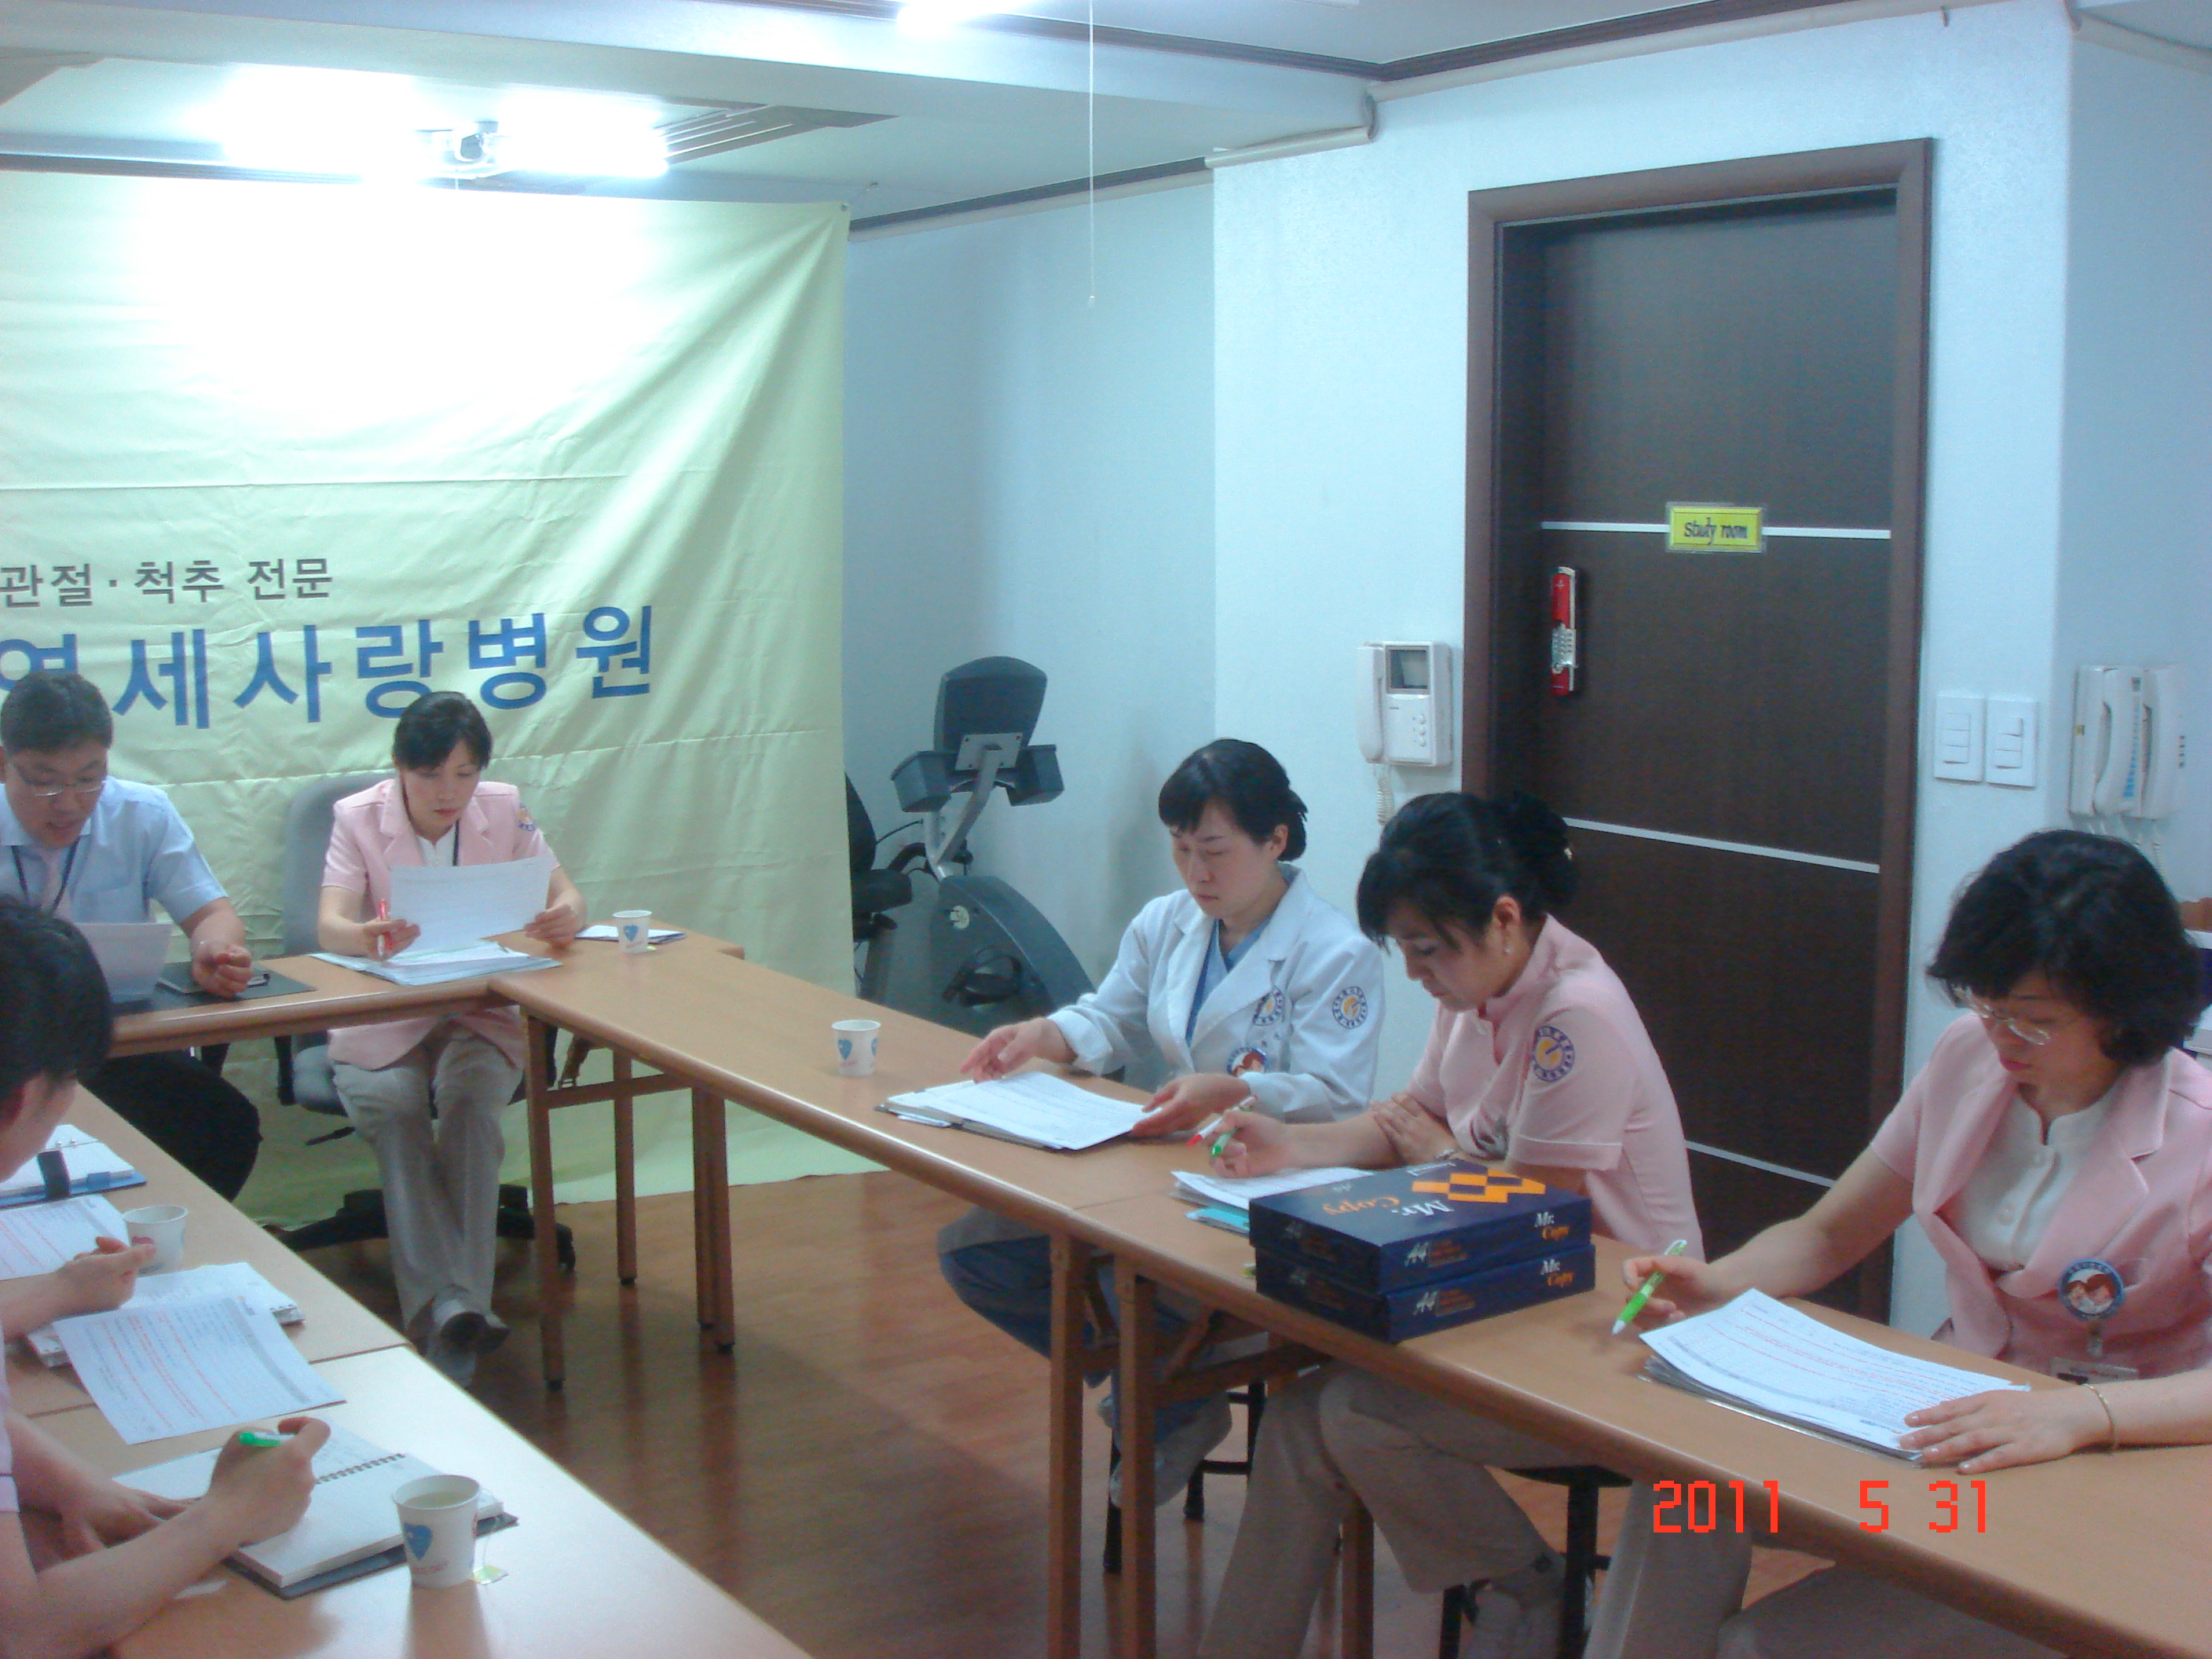 [강북점] 2011년 5월 31일 - 실무진 회의 개최 게시글의 6번째 첨부파일입니다.